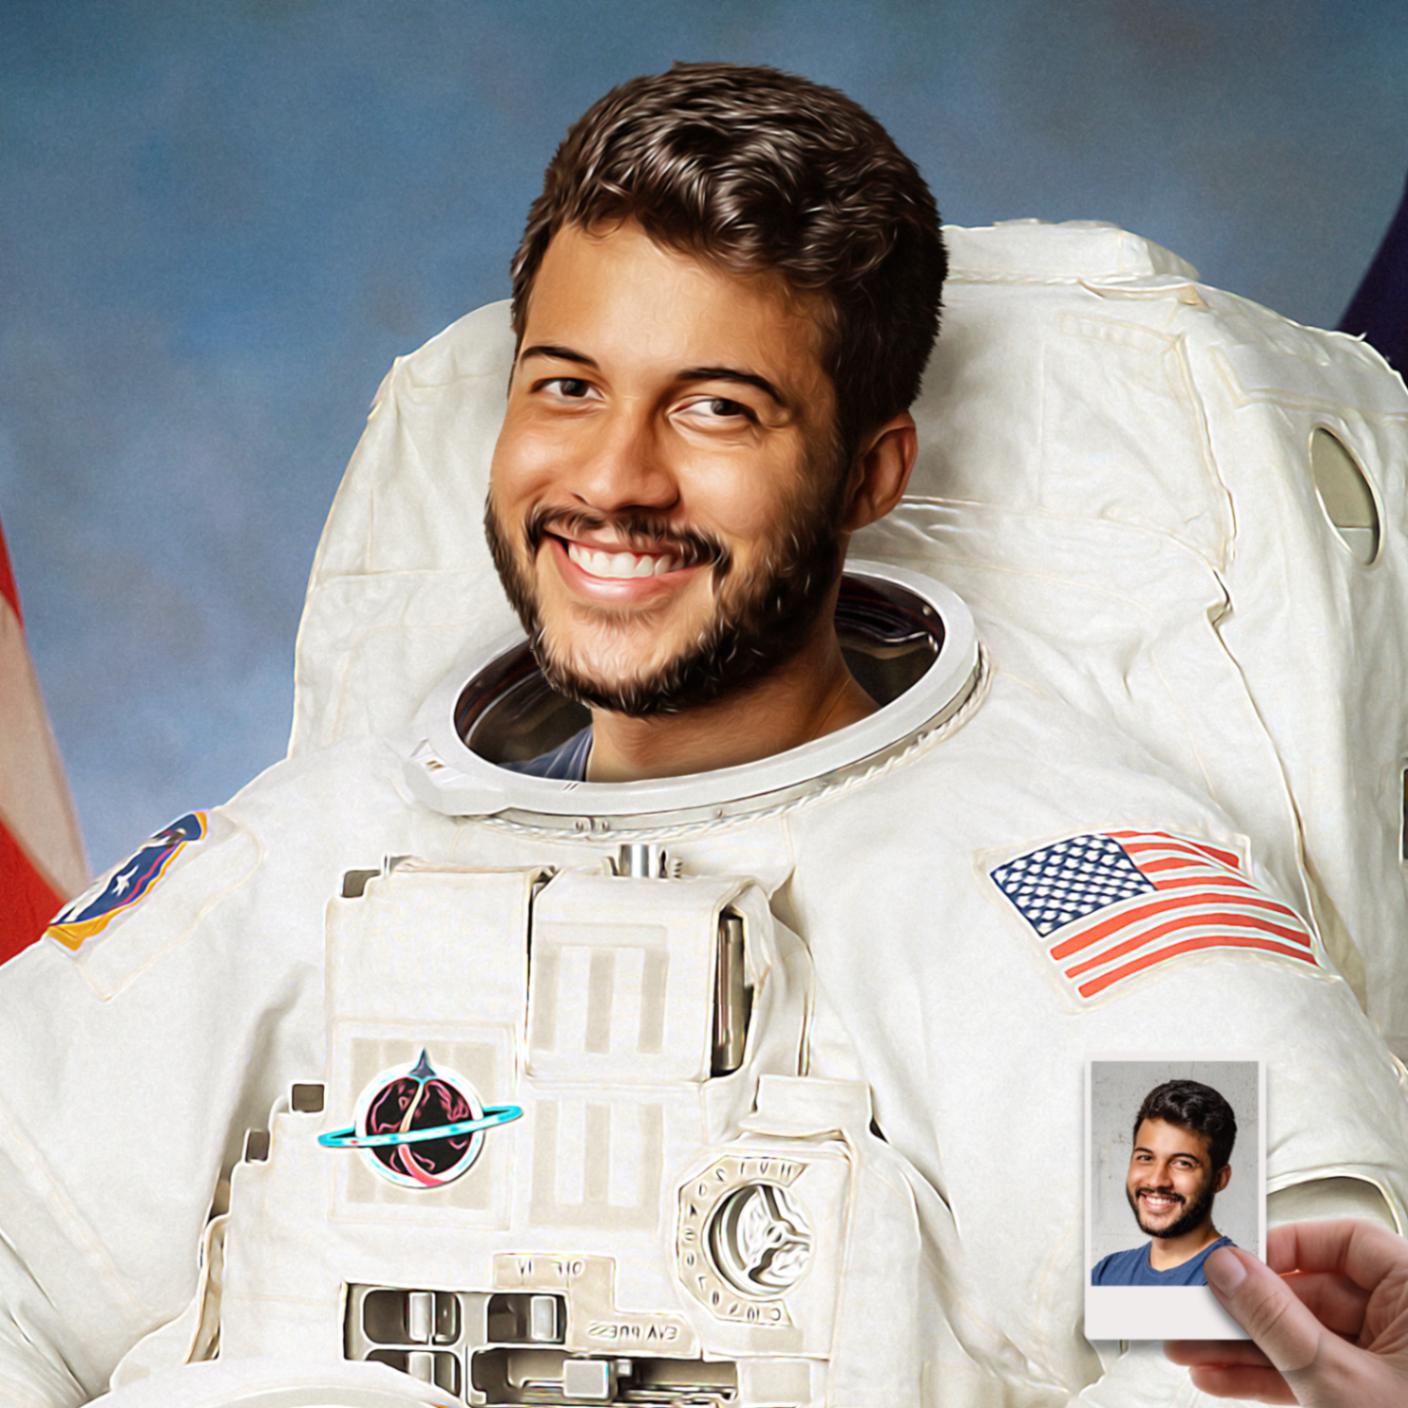 Vorher / Nachher Bild eines Mannes als Astronaut auf einem Poster